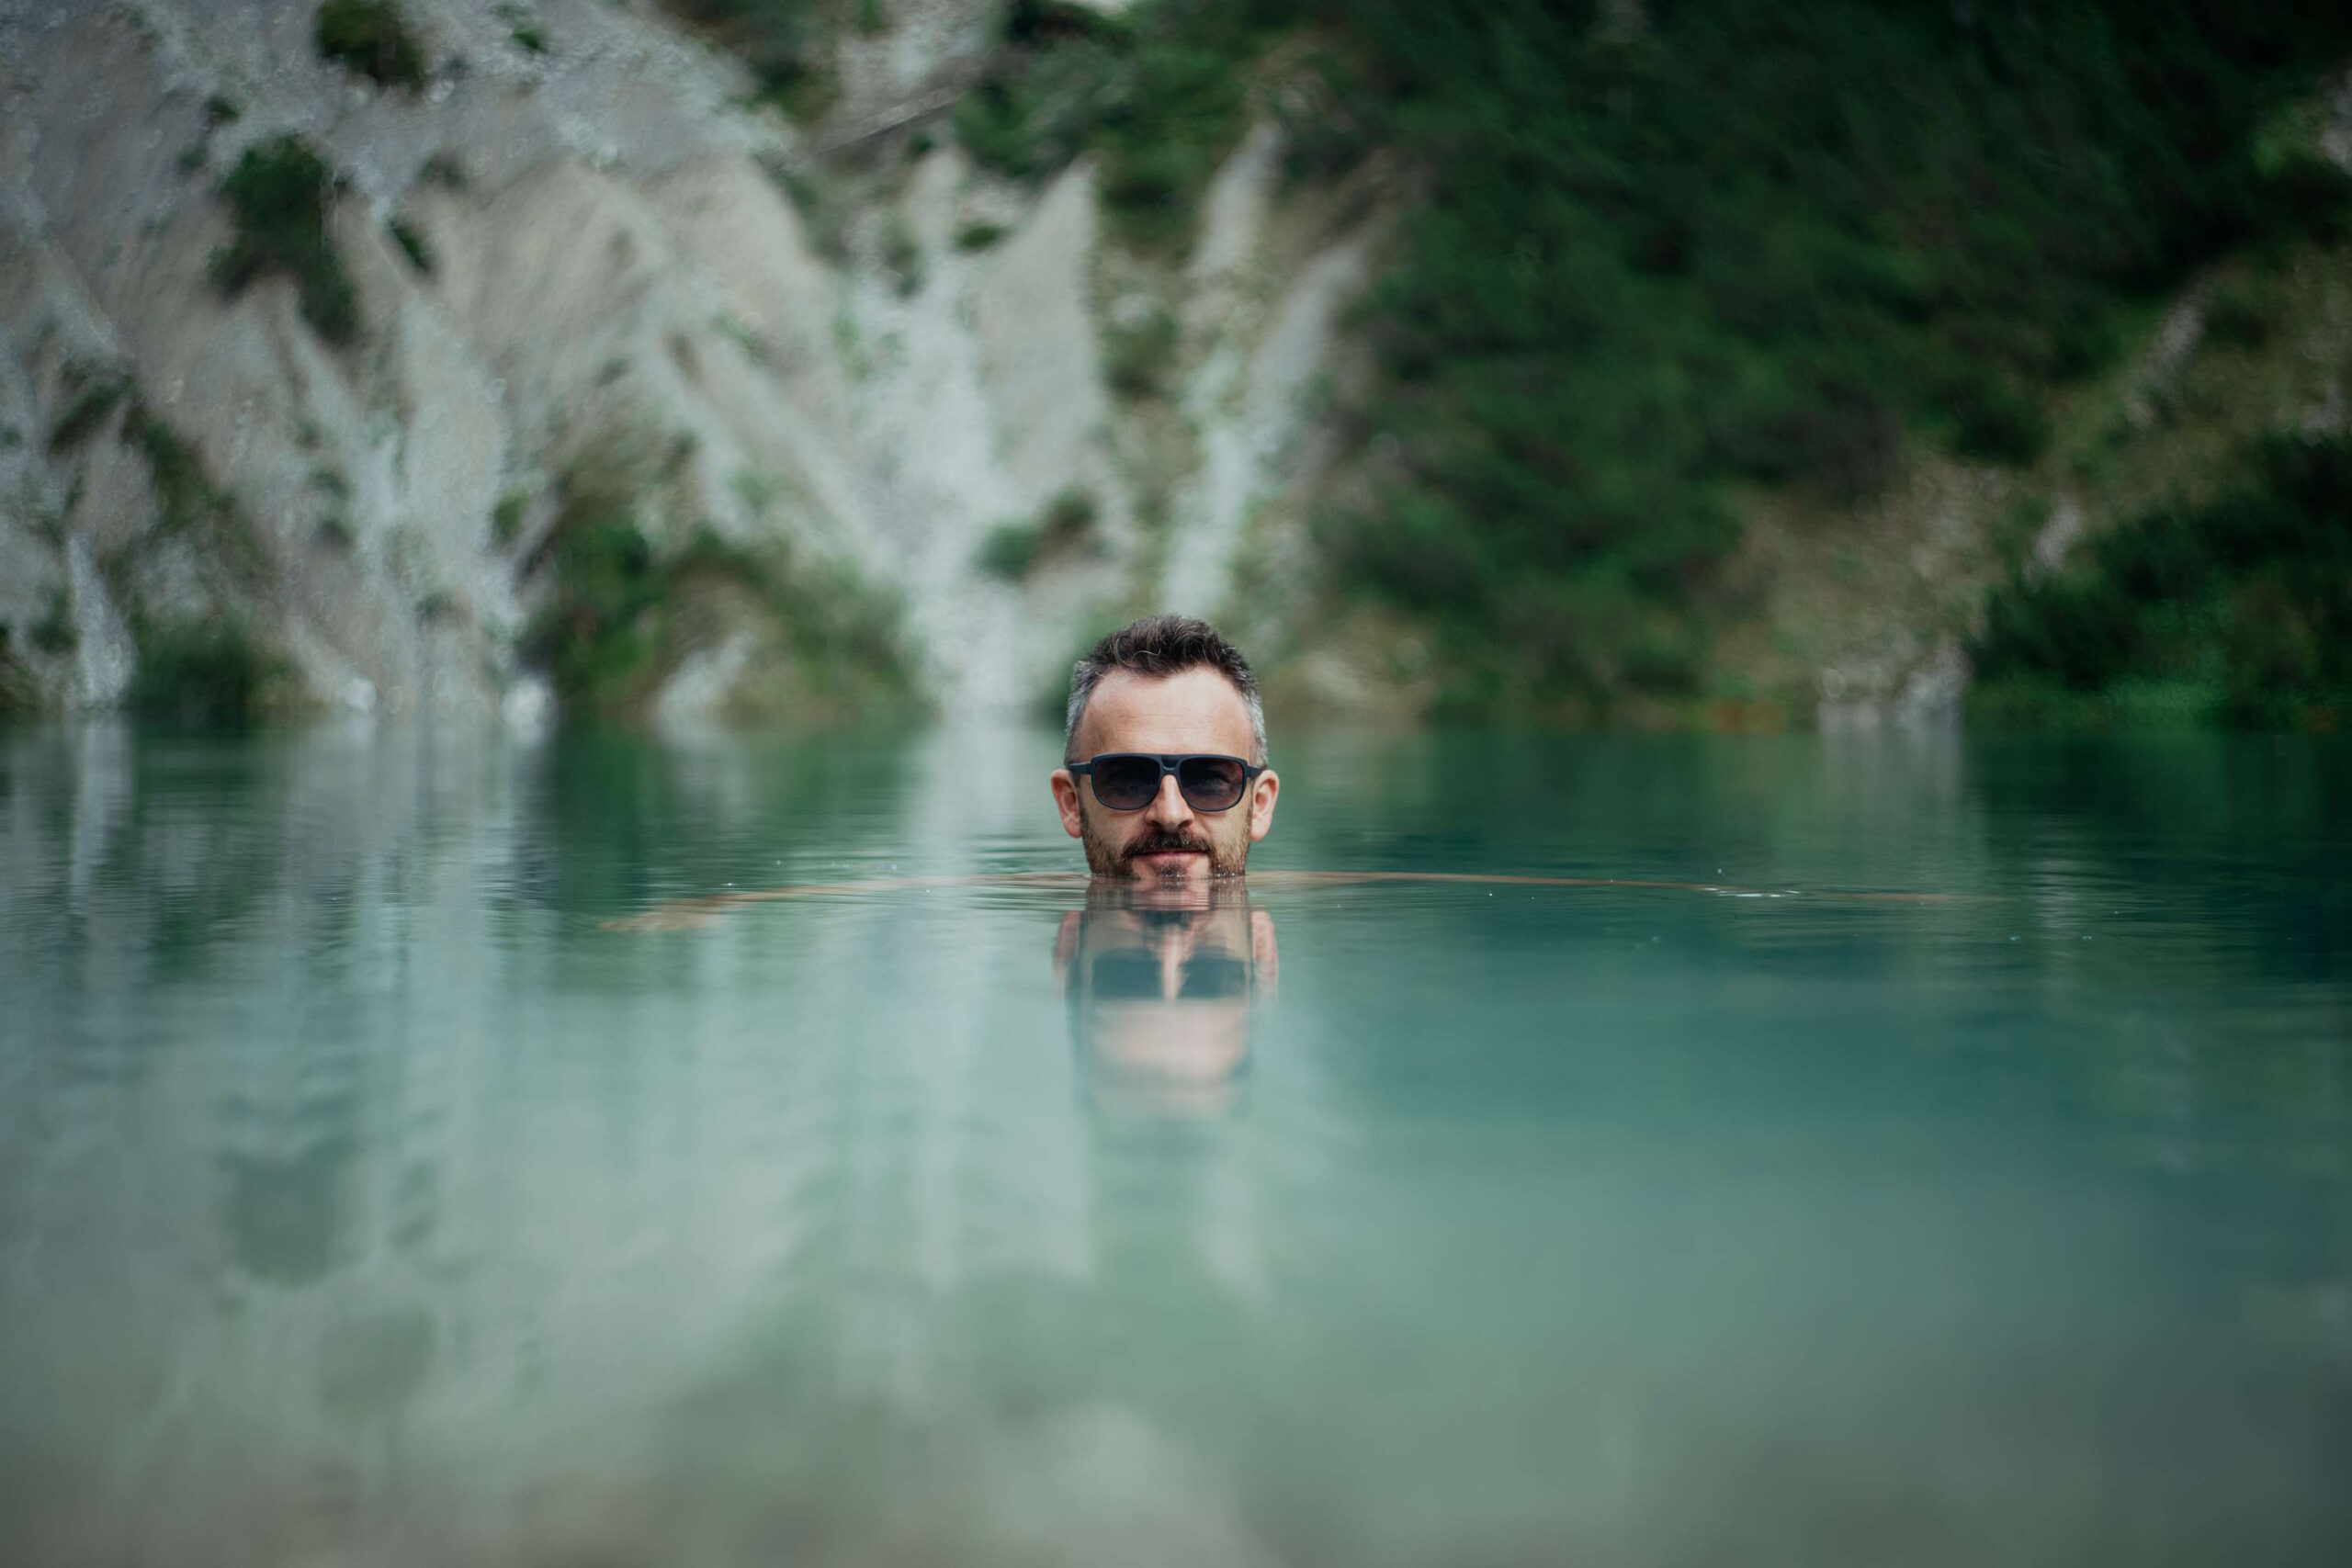 Mann mit Sonnenbrille schwimmt im klaren Wasser eines Sees, felsige Landschaft im Hintergrund - UV bedeutet